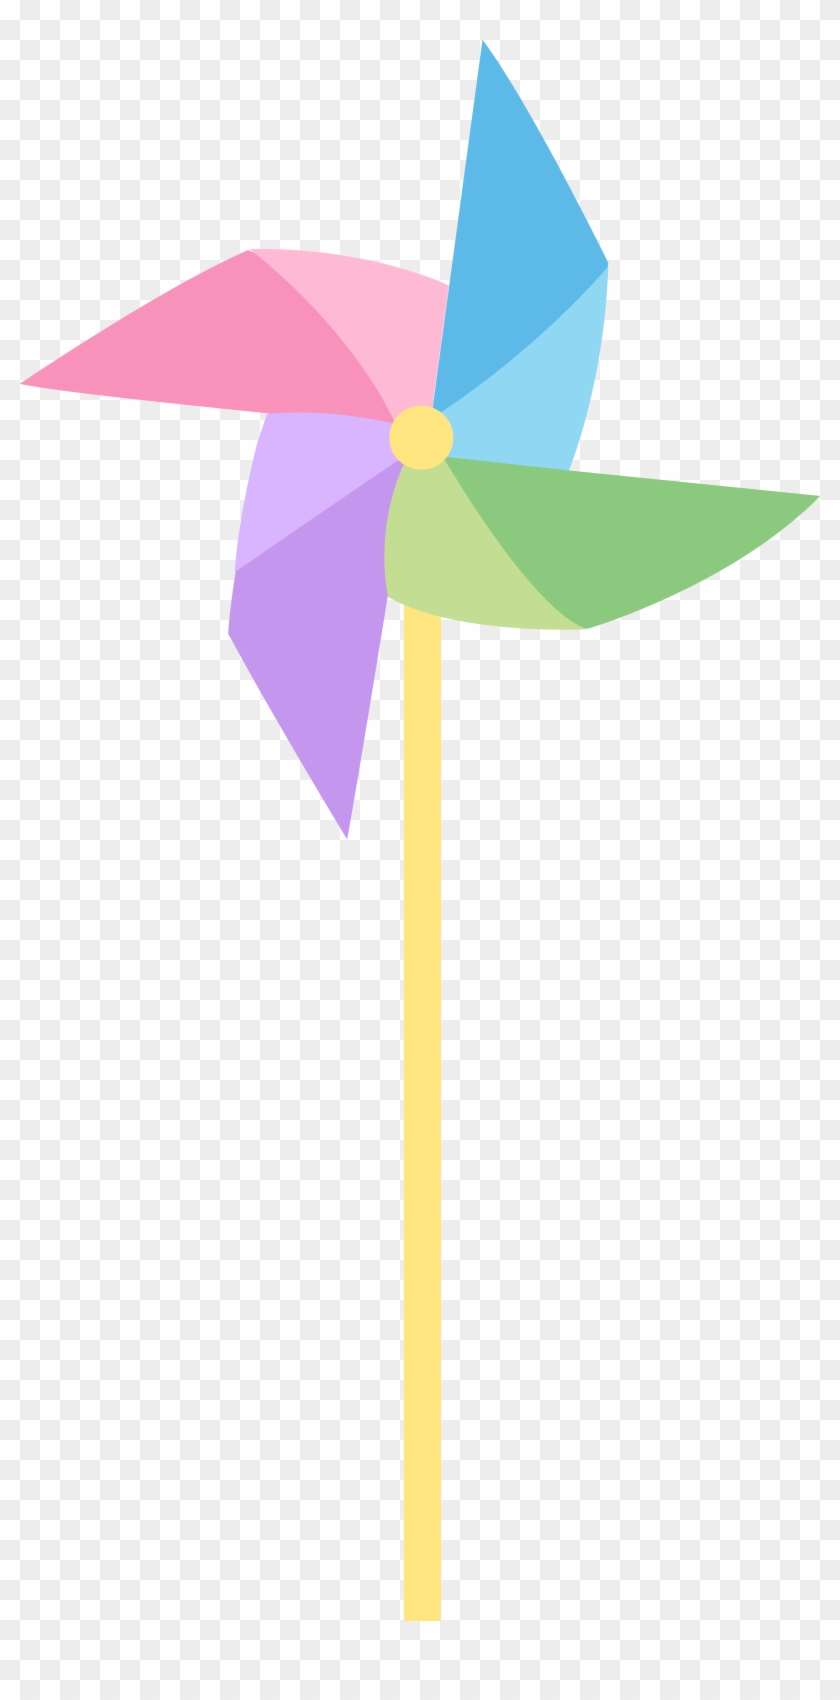 Pastel Colored Pinwheel Free Clip Art Toy - Pinwheel Clipart Free - Png Download